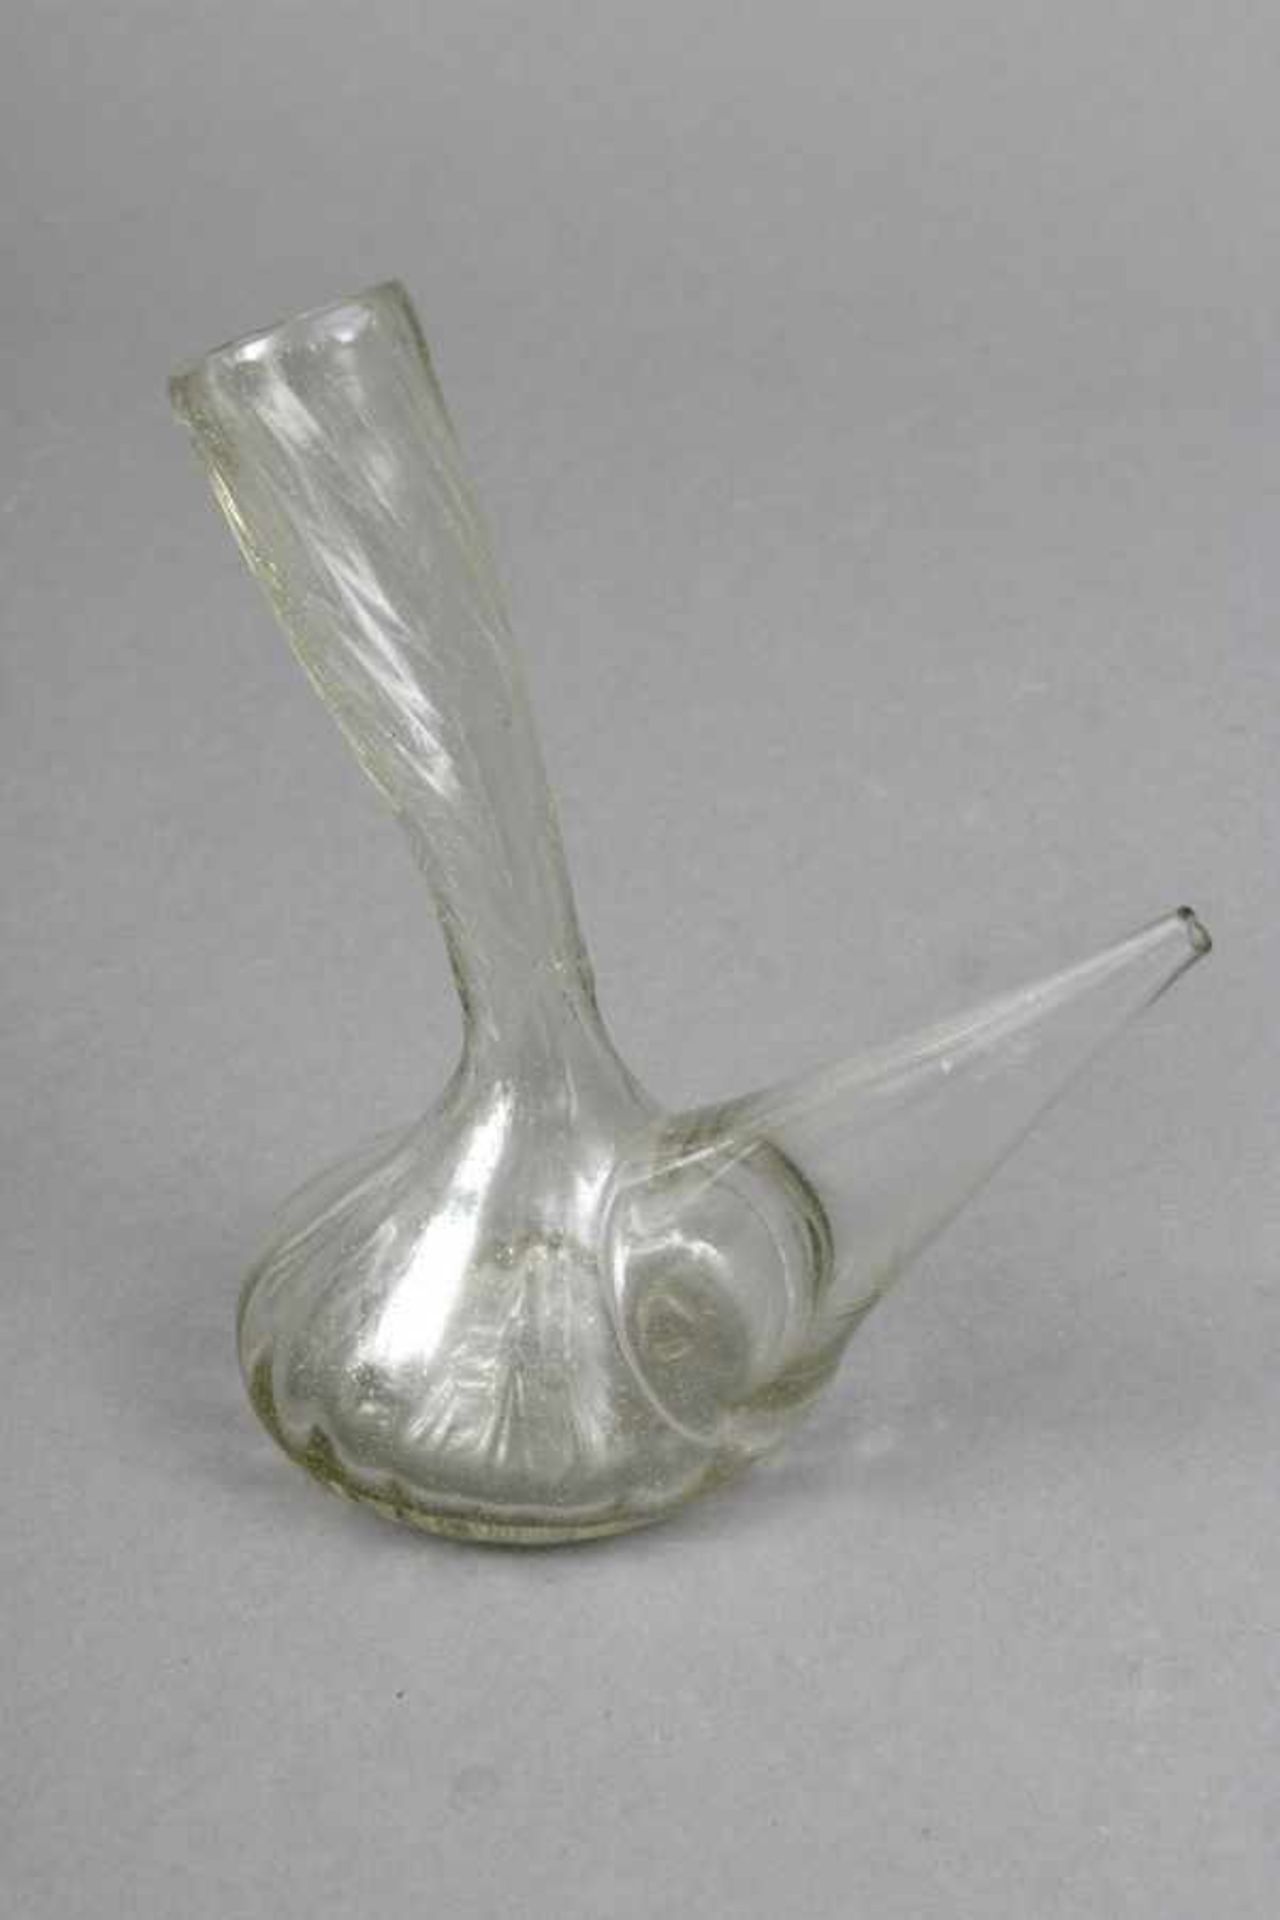 Kleines Öl-Kännchen Glas, farblos, wohl um1750-1800, leicht gedreht, bauchiges Behältnis mit